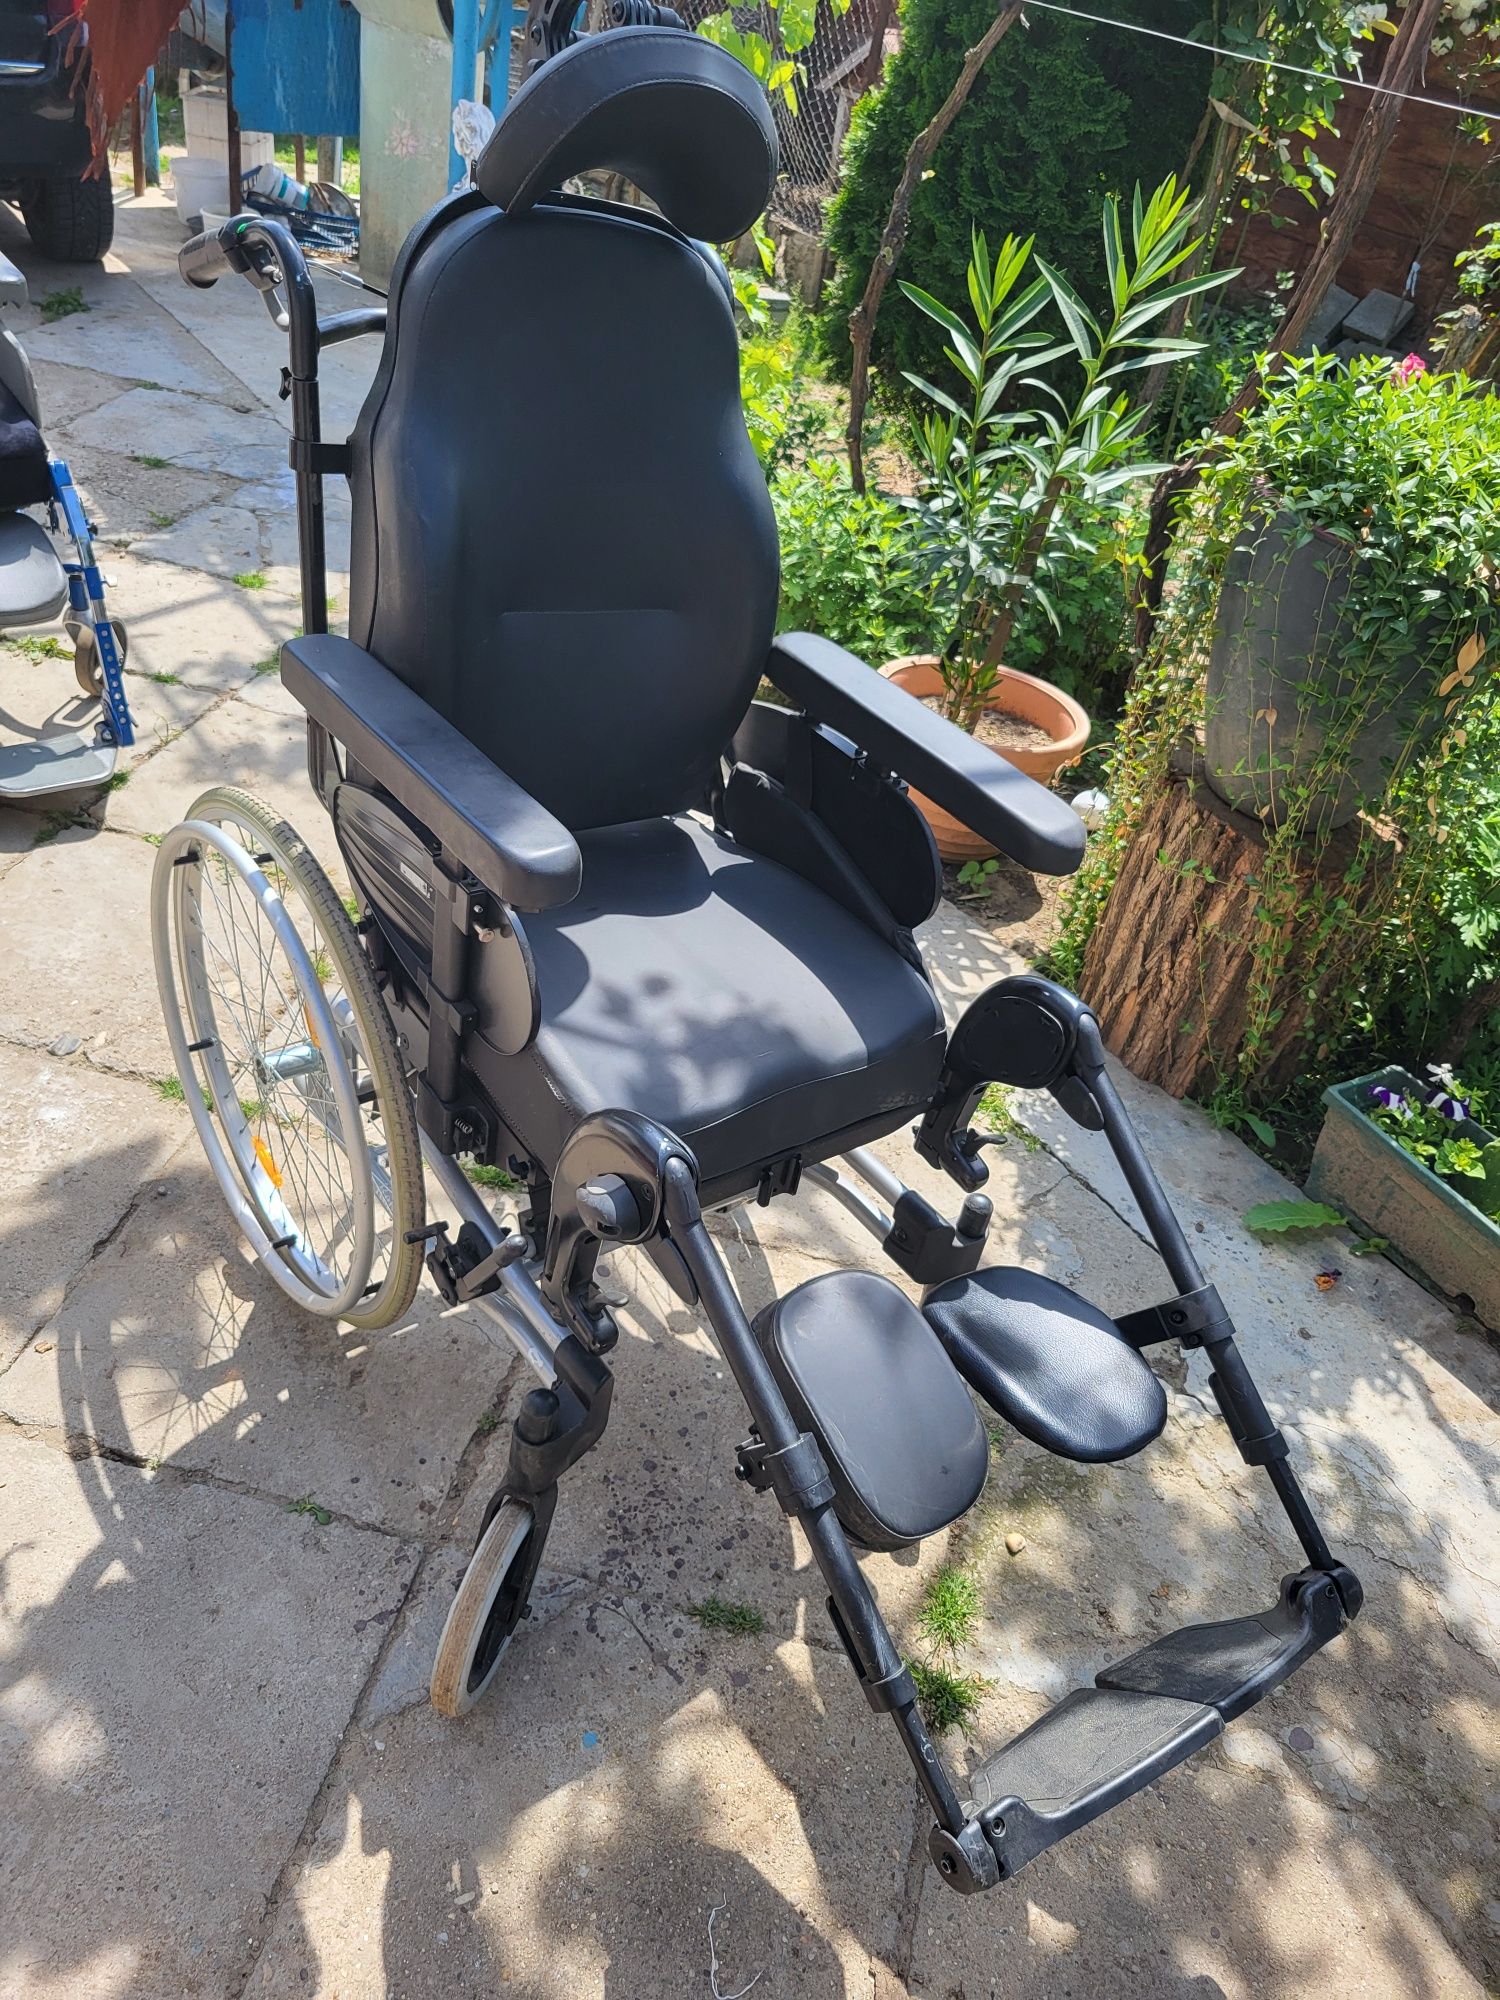 Carucior/fotoliu rulant pt. persoane cu dizabilitati